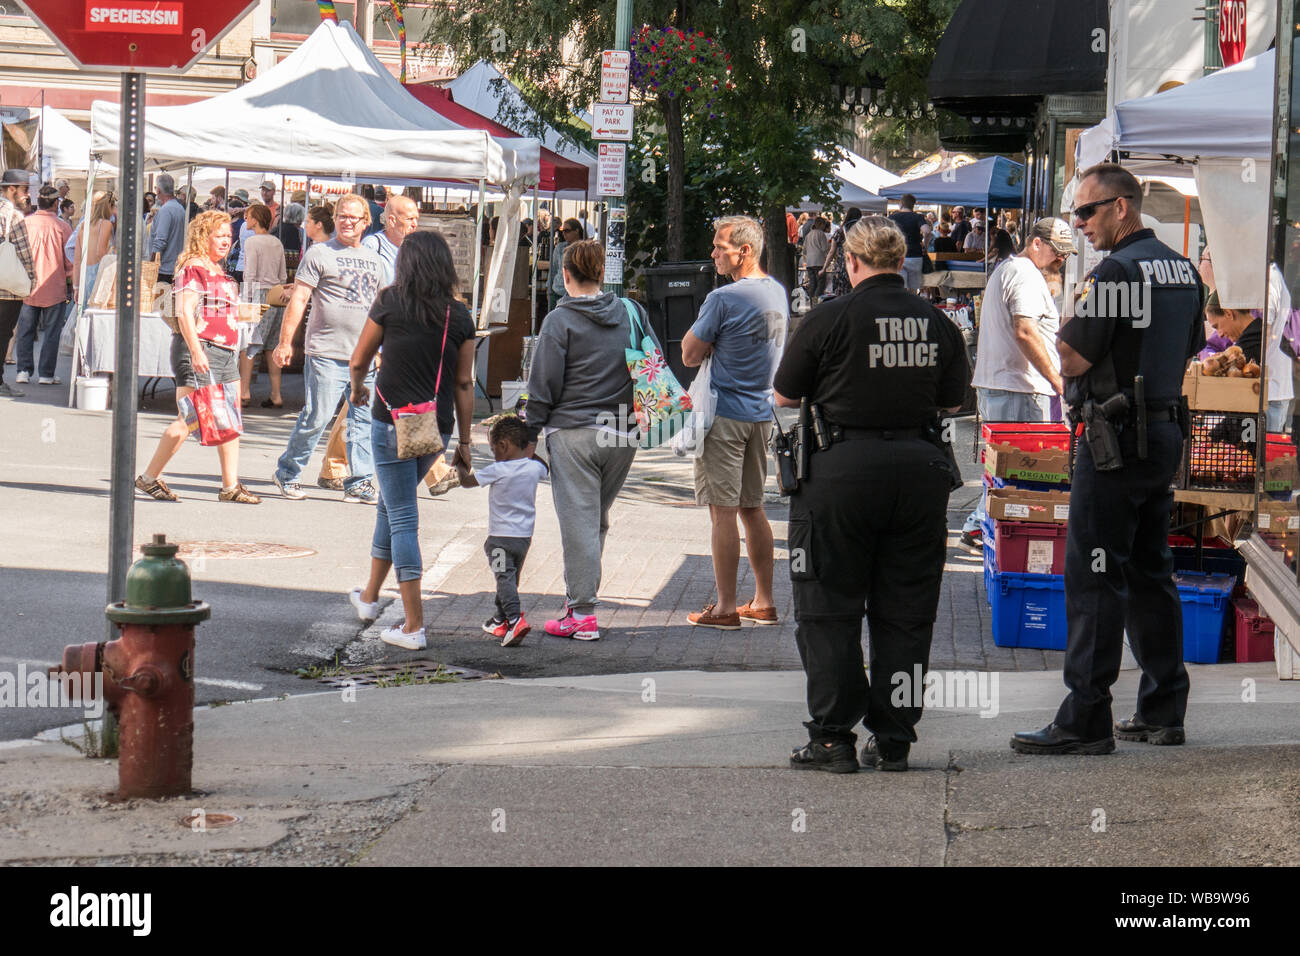 Troy, New York/USA - 24 août 2019 : marché des producteurs sur une journée ensoleillée montrant les adultes, les enfants, les chiens et les fournisseurs. Banque D'Images